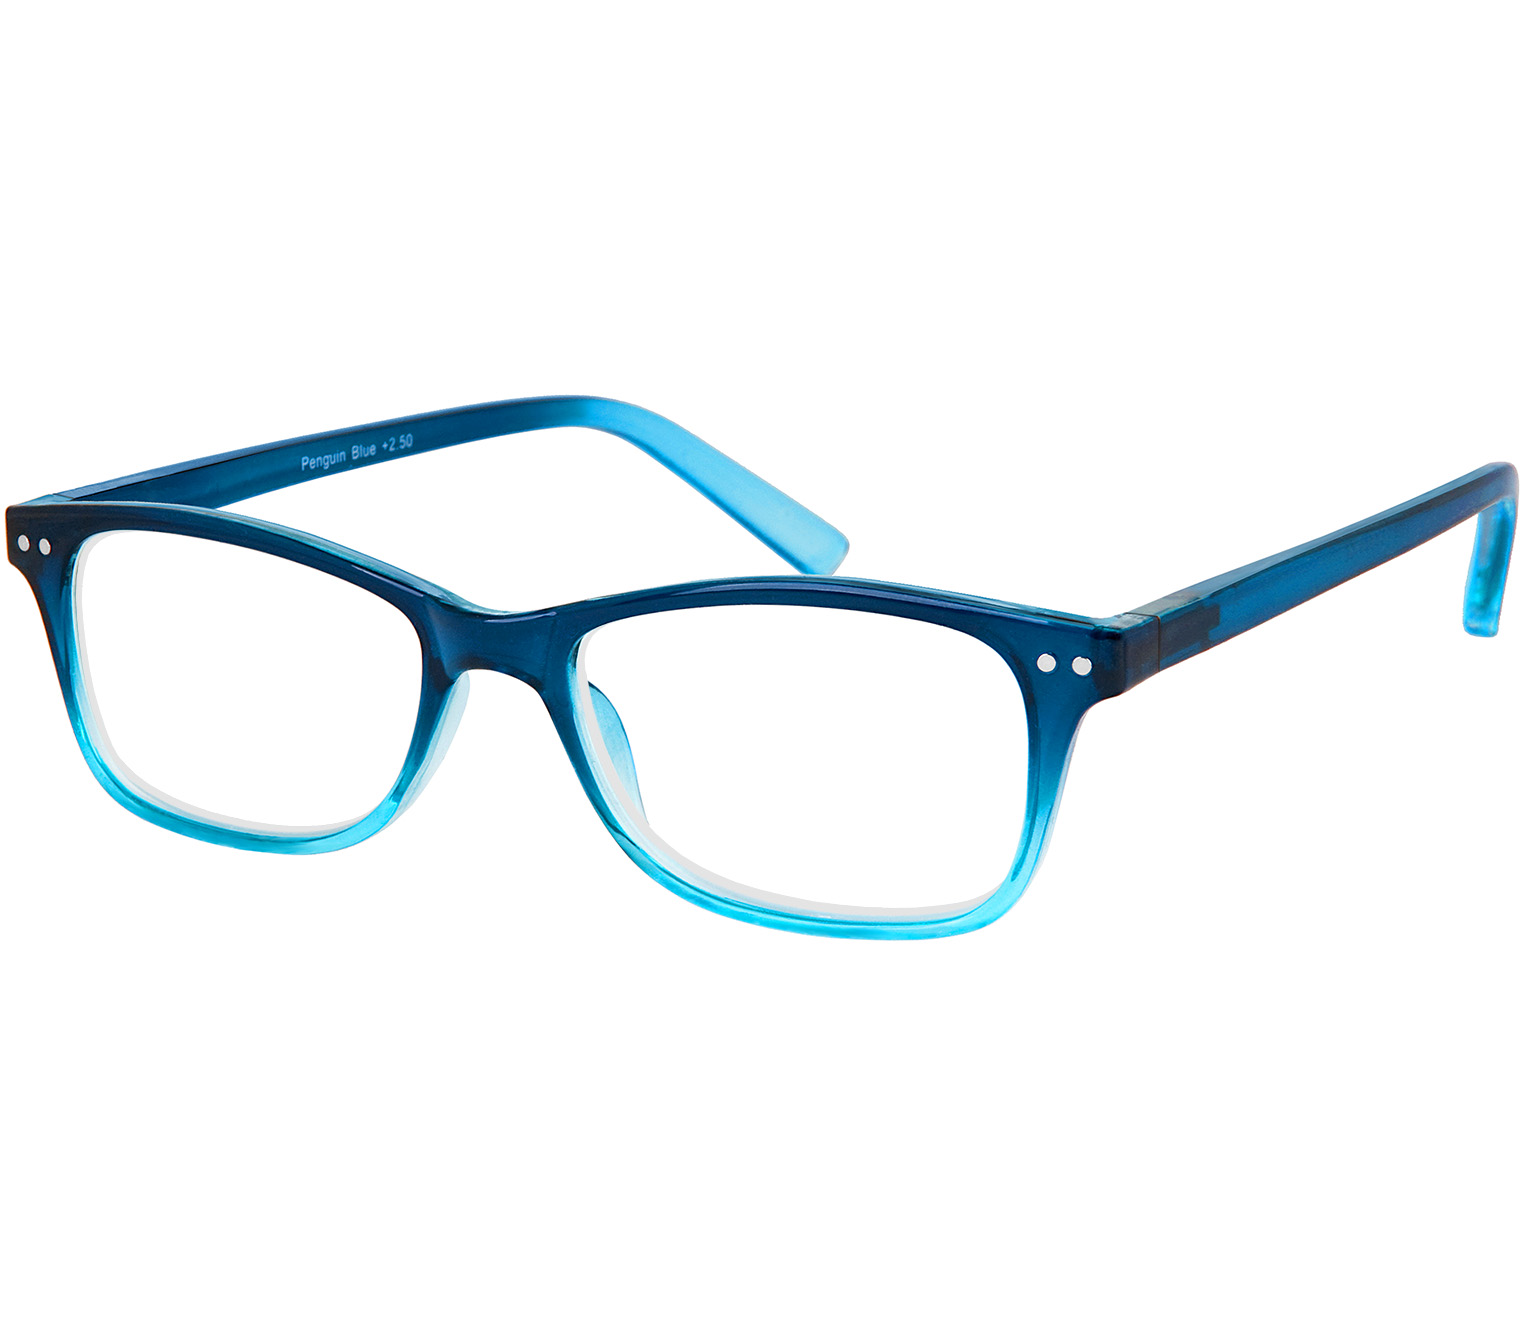 boble synonymordbog Antagelser, antagelser. Gætte Penguin (Blue) Reading Glasses - Tiger Specs